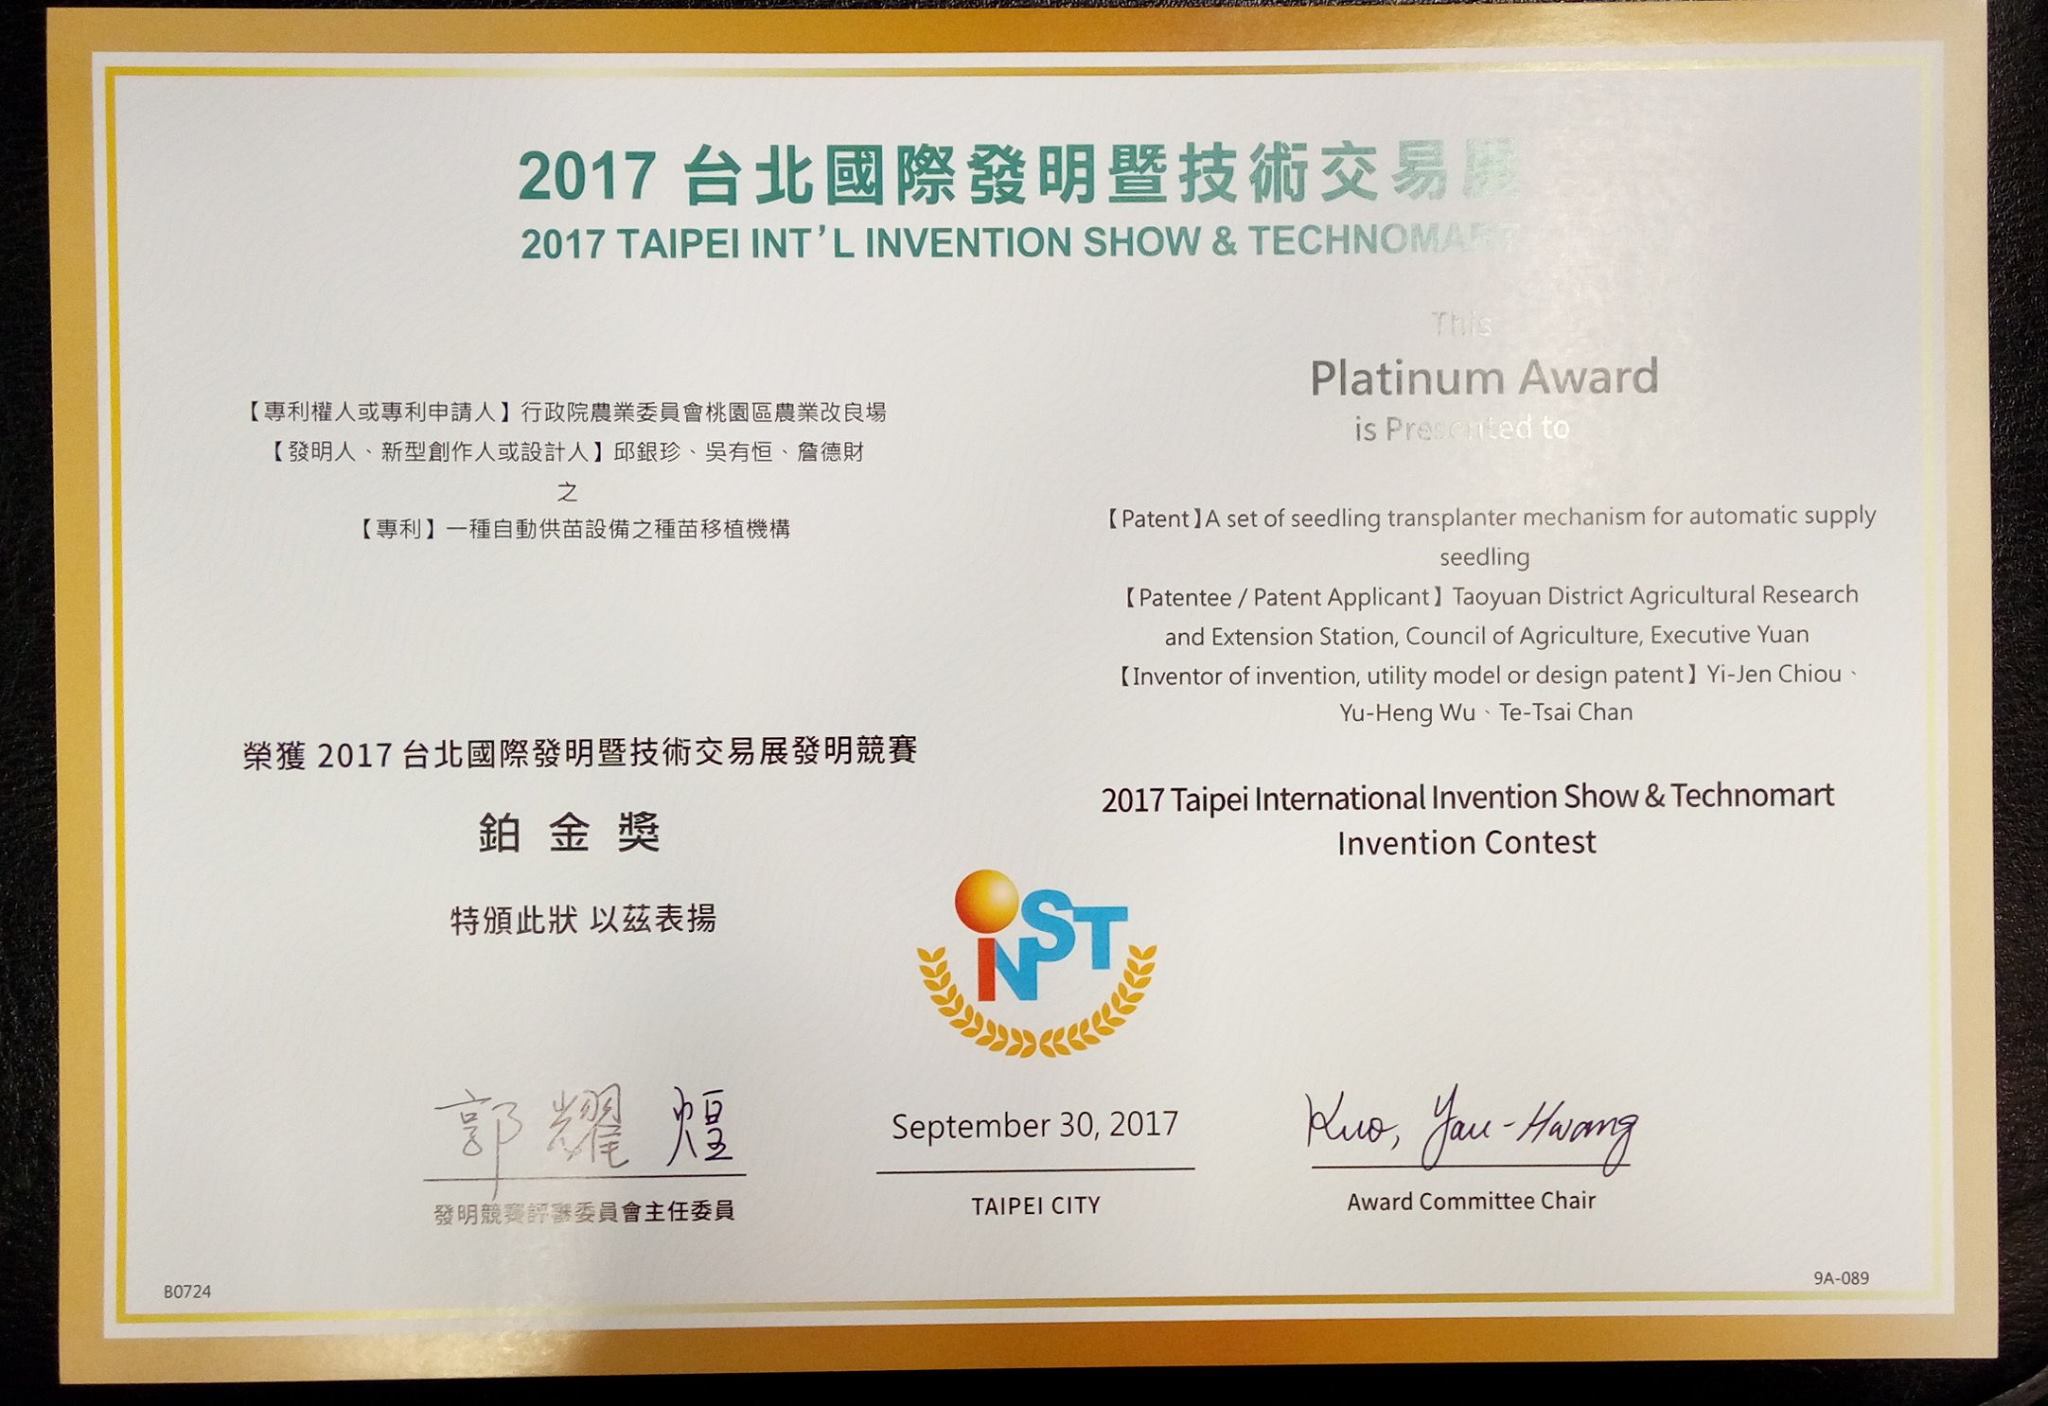 「自動供苗設備之種苗移植機構」於106年獲得台北國際發明暨技術交易展-發明競賽最高榮譽鉑金獎。